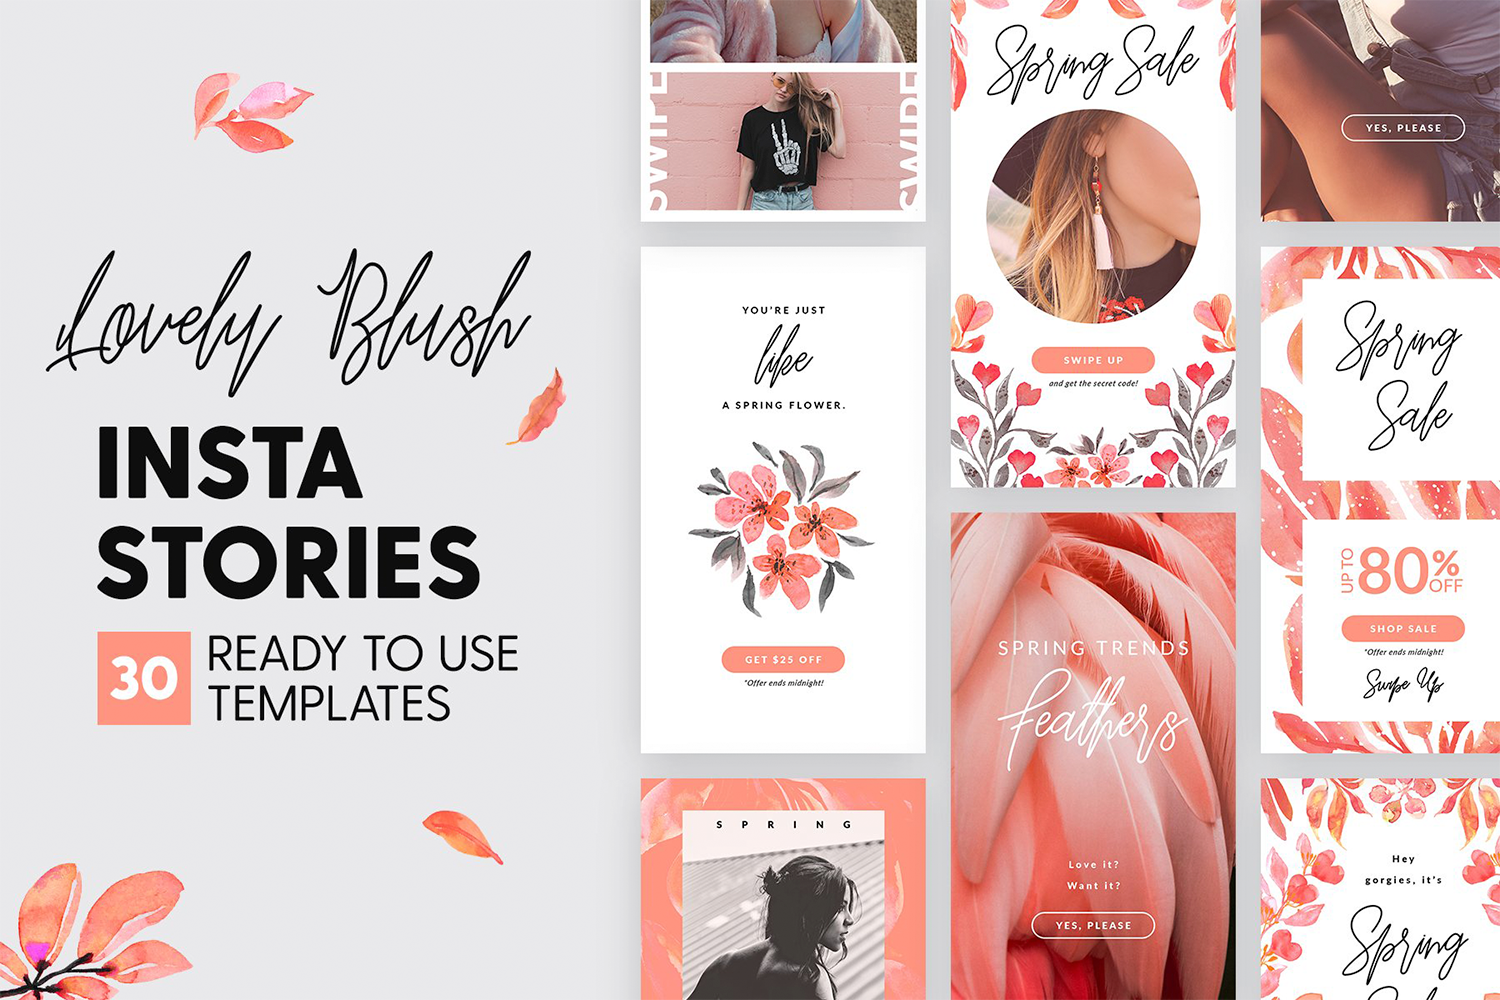 1110 可爱粉红色女性服装品牌Instagram推广社交媒体设计素材包 Lovely Blush Instagram Stories